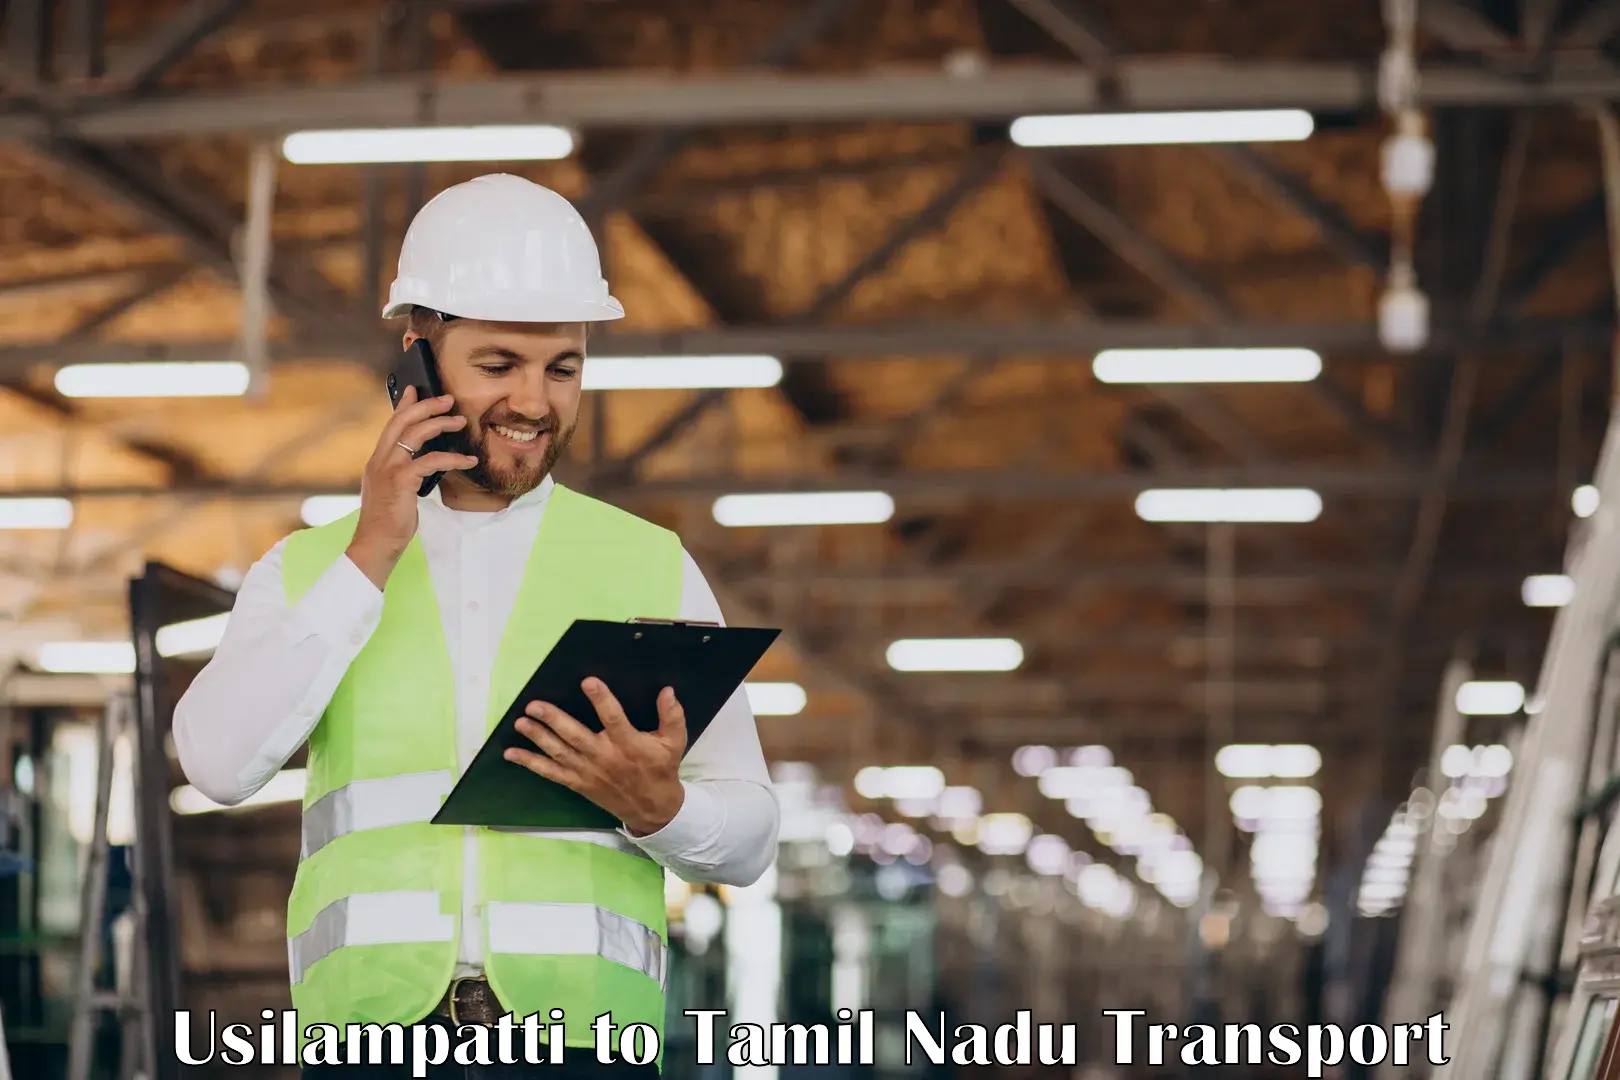 Daily transport service Usilampatti to Sankarankoil